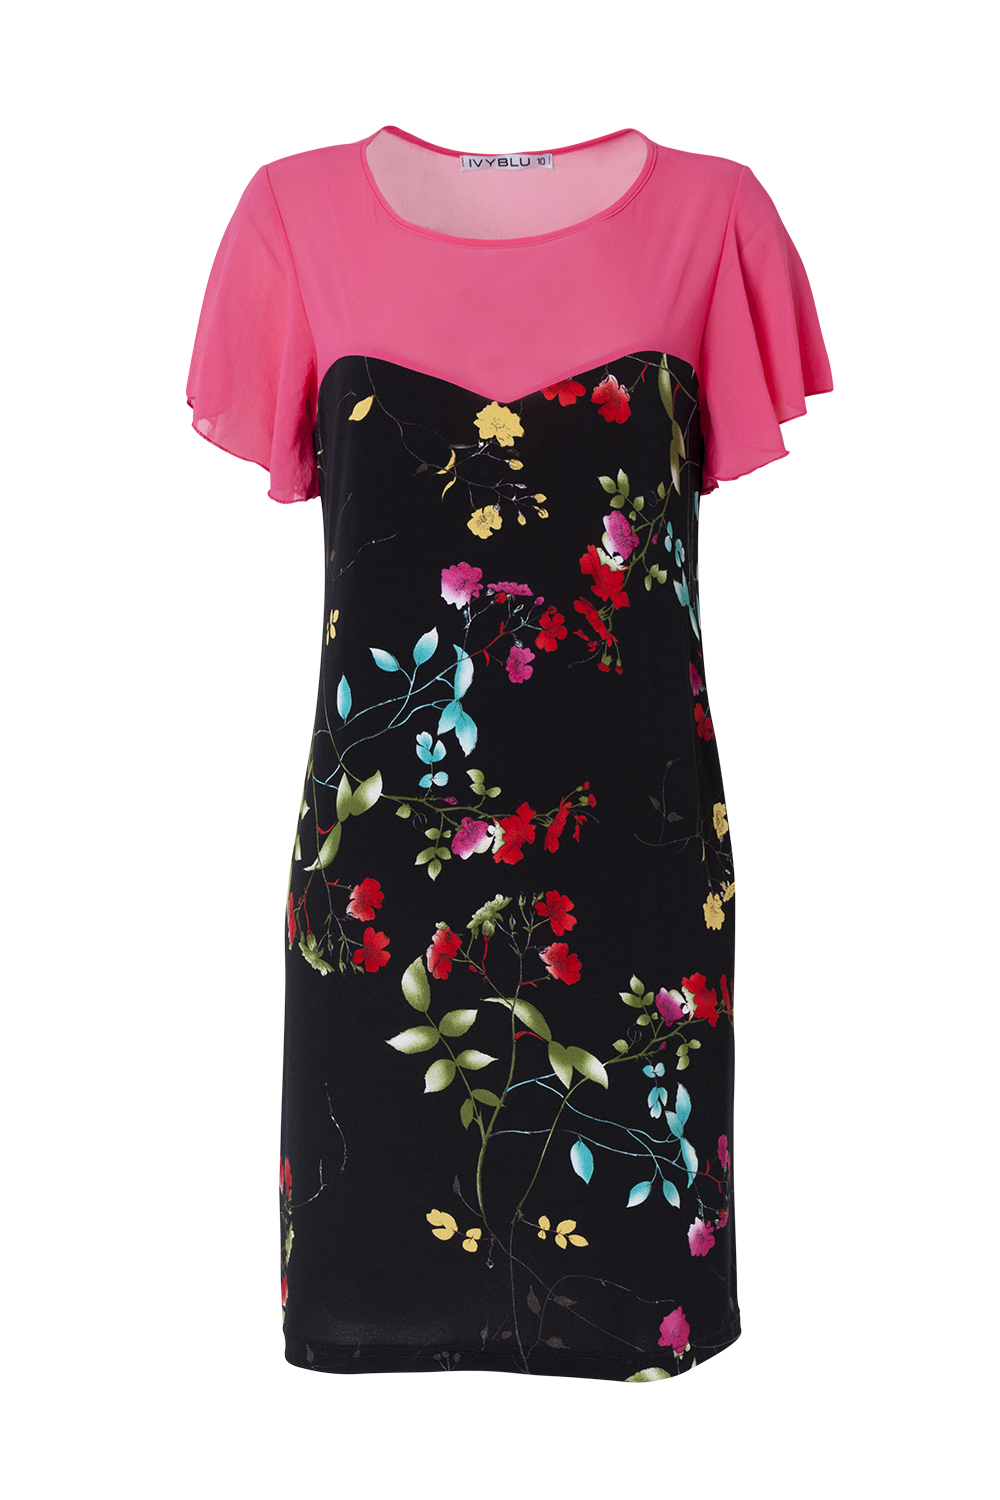 Dress, $229, by Ivy Blu.